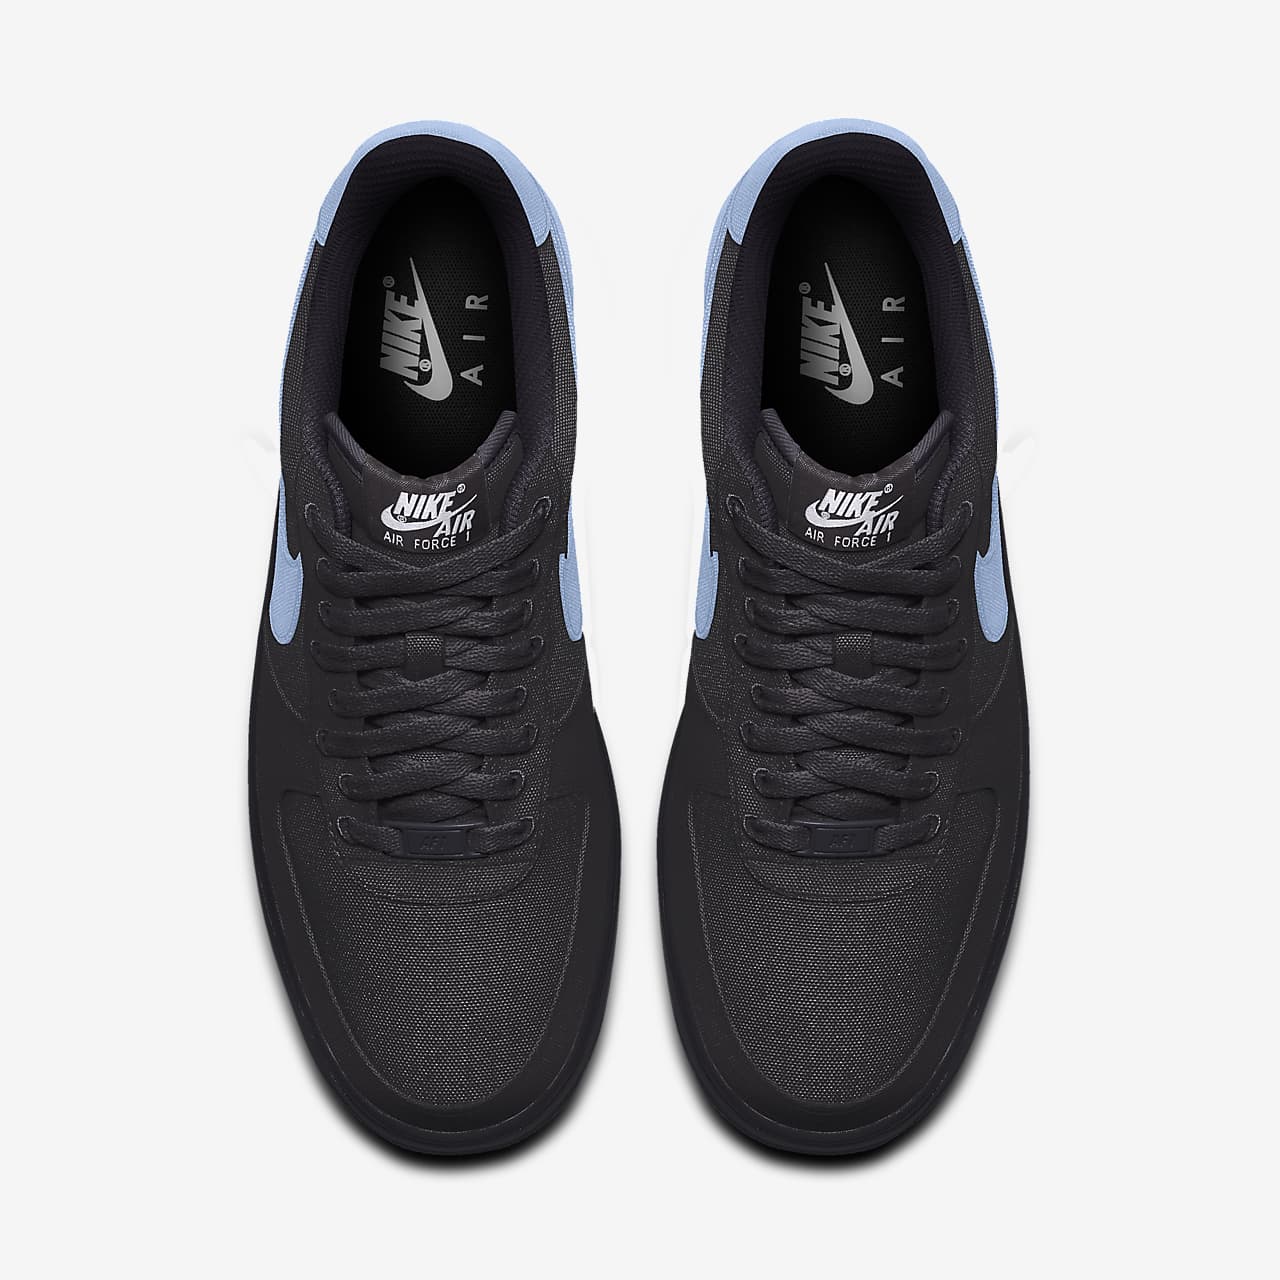 Precursor Mono piso Nike Air Force 1 Low By You Zapatillas personalizables - Hombre. Nike ES